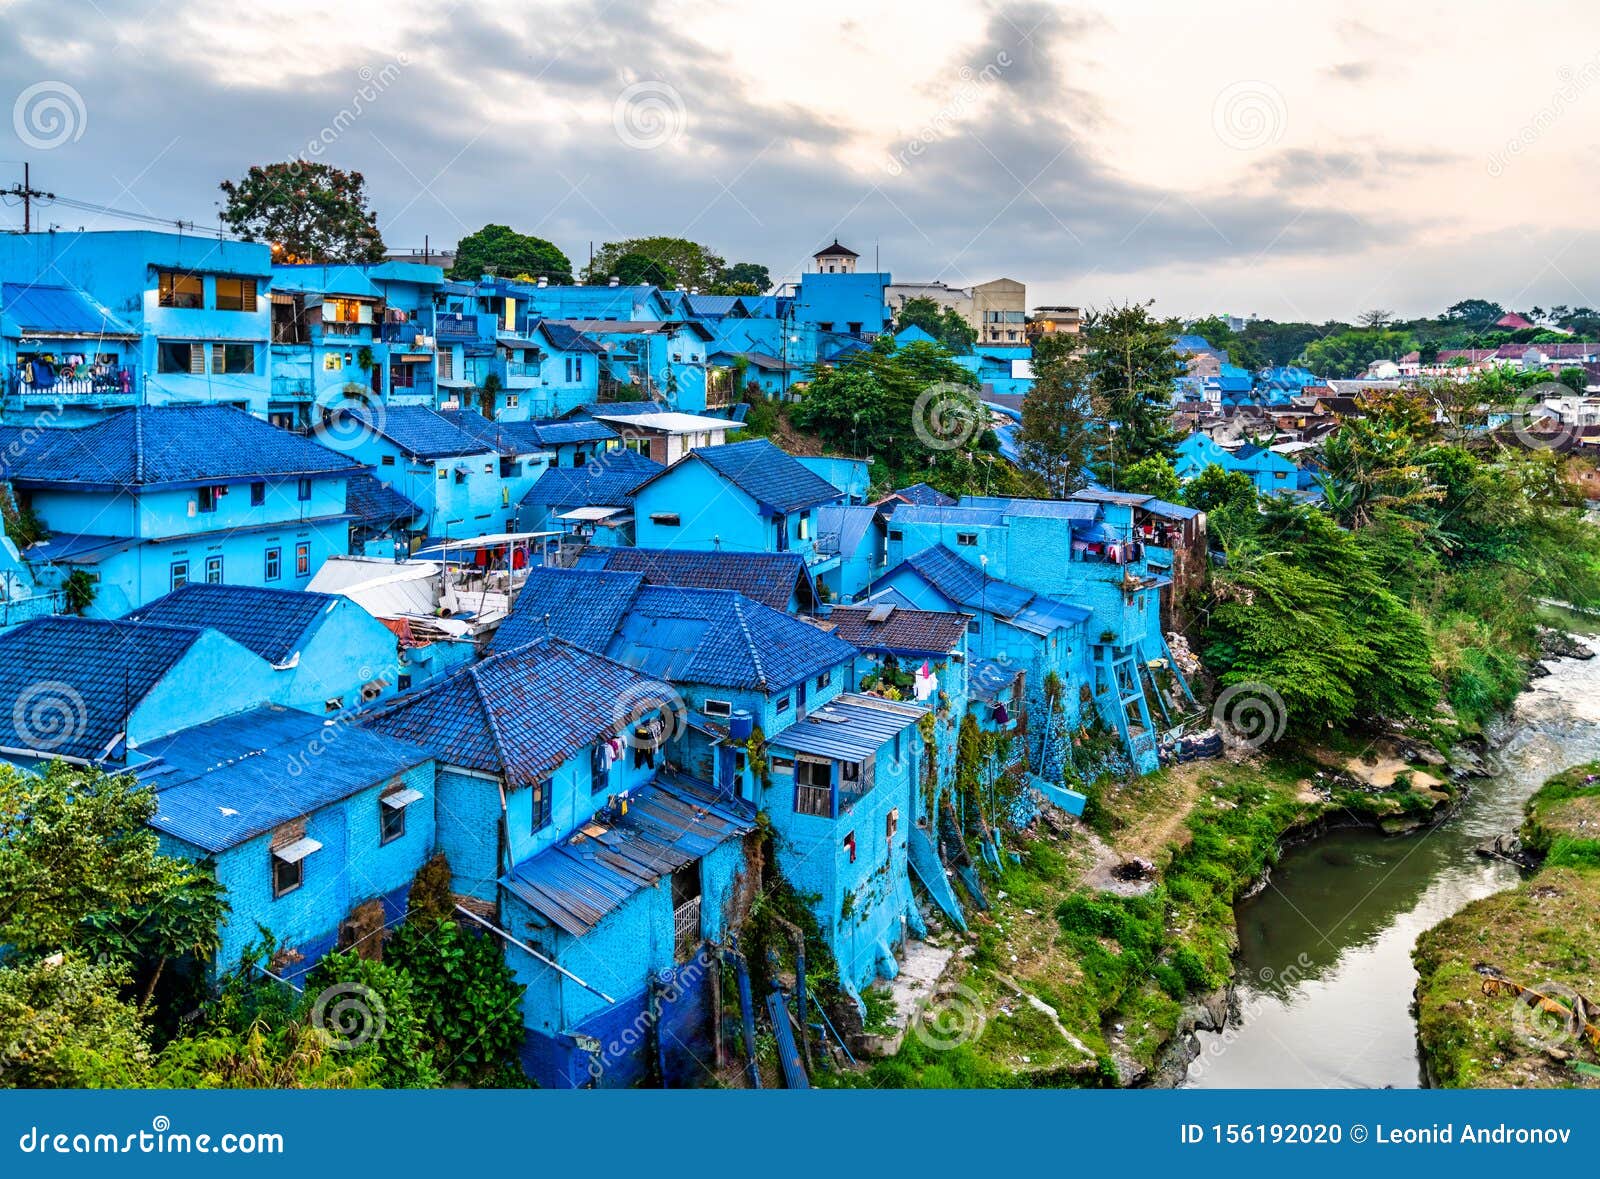 kampung warna-warni jodipan, the village of color in malang, indonesia